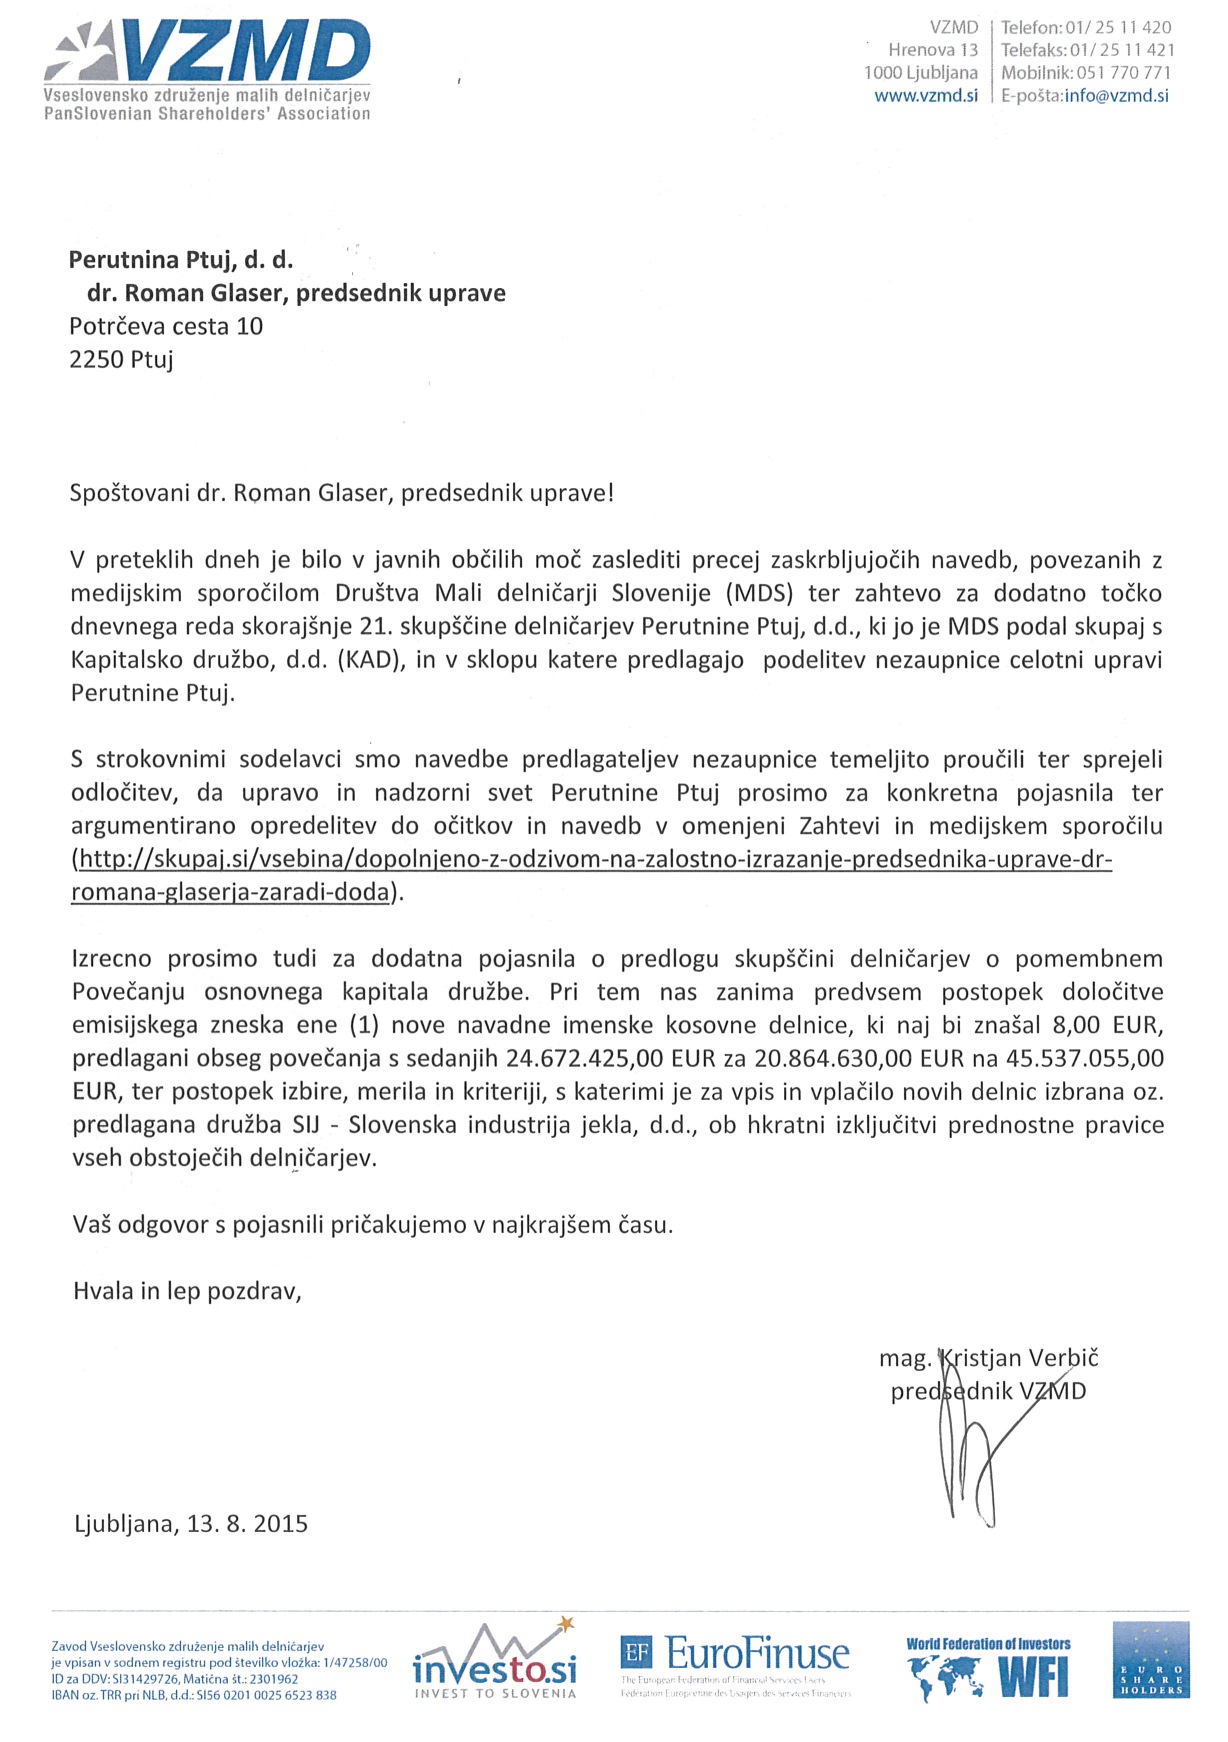 Dopis predsednika_VZMD_predsednikoma_uprave_in_nadzornega_sveta_Perutnine_Ptuj